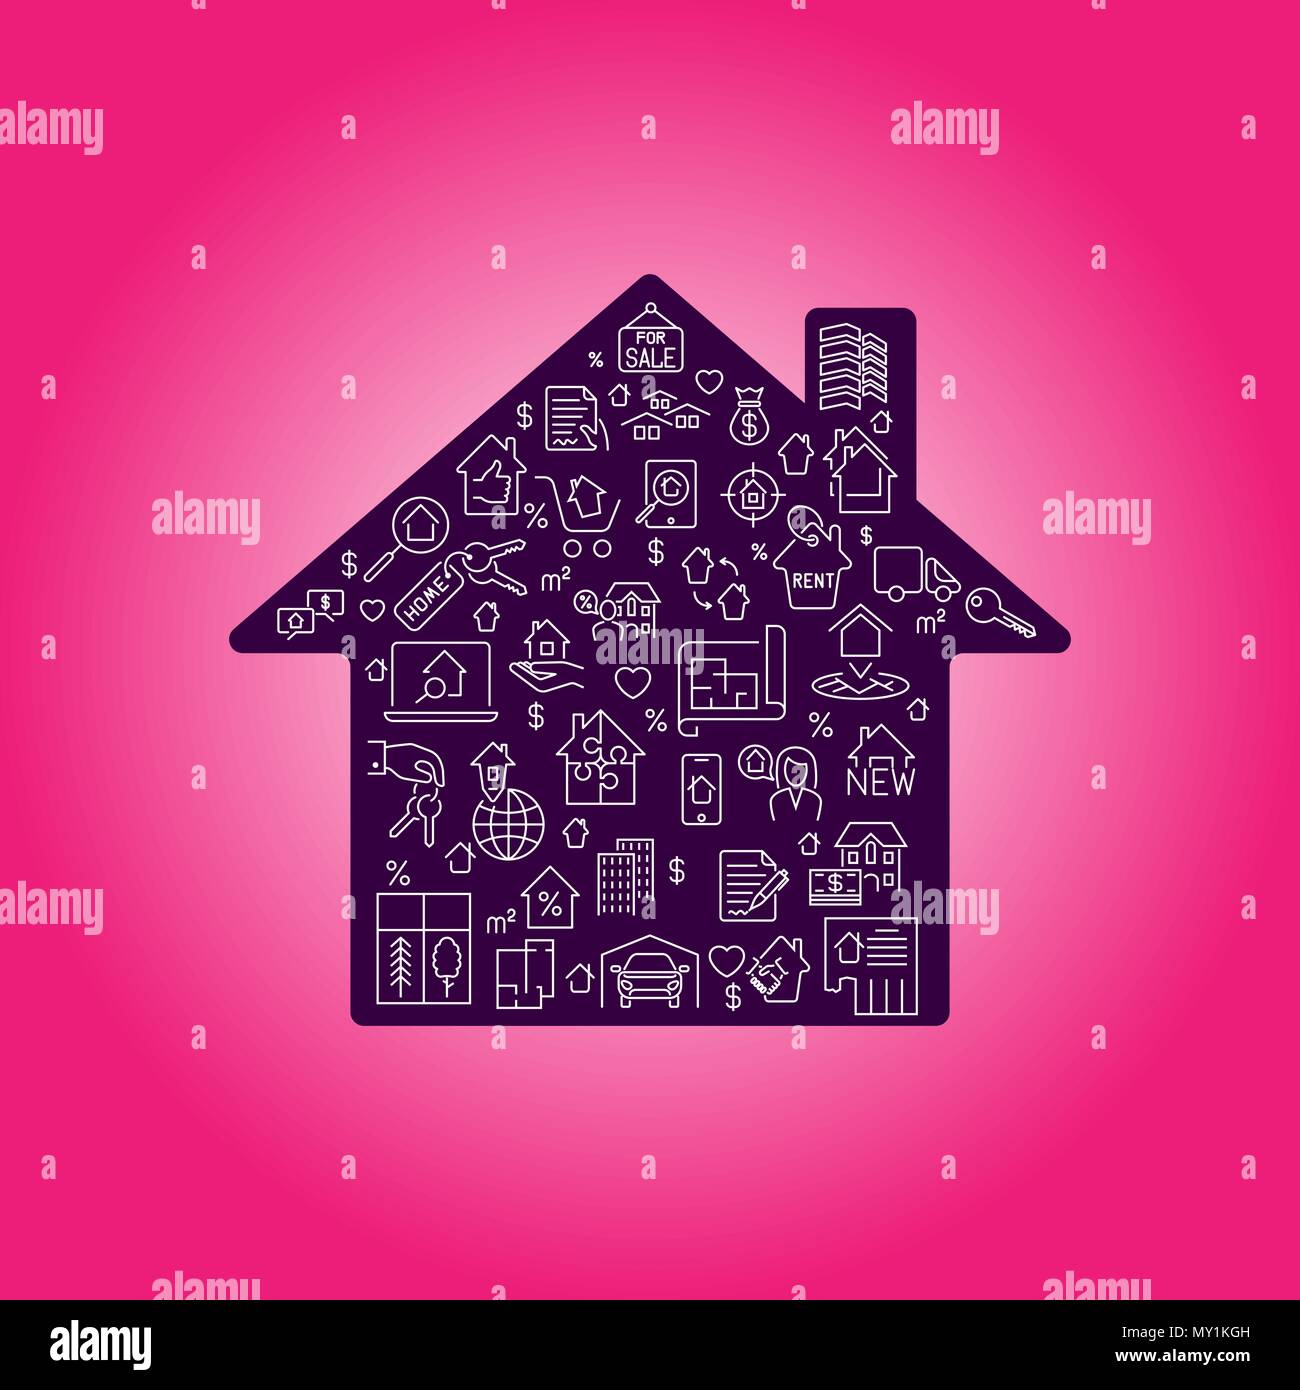 Immobilien Symbol in Haus Silhouette Hintergrund Abbildung. Vektordatei layered für einfache Manipulation und kundenspezifische Einfärben Stock Vektor